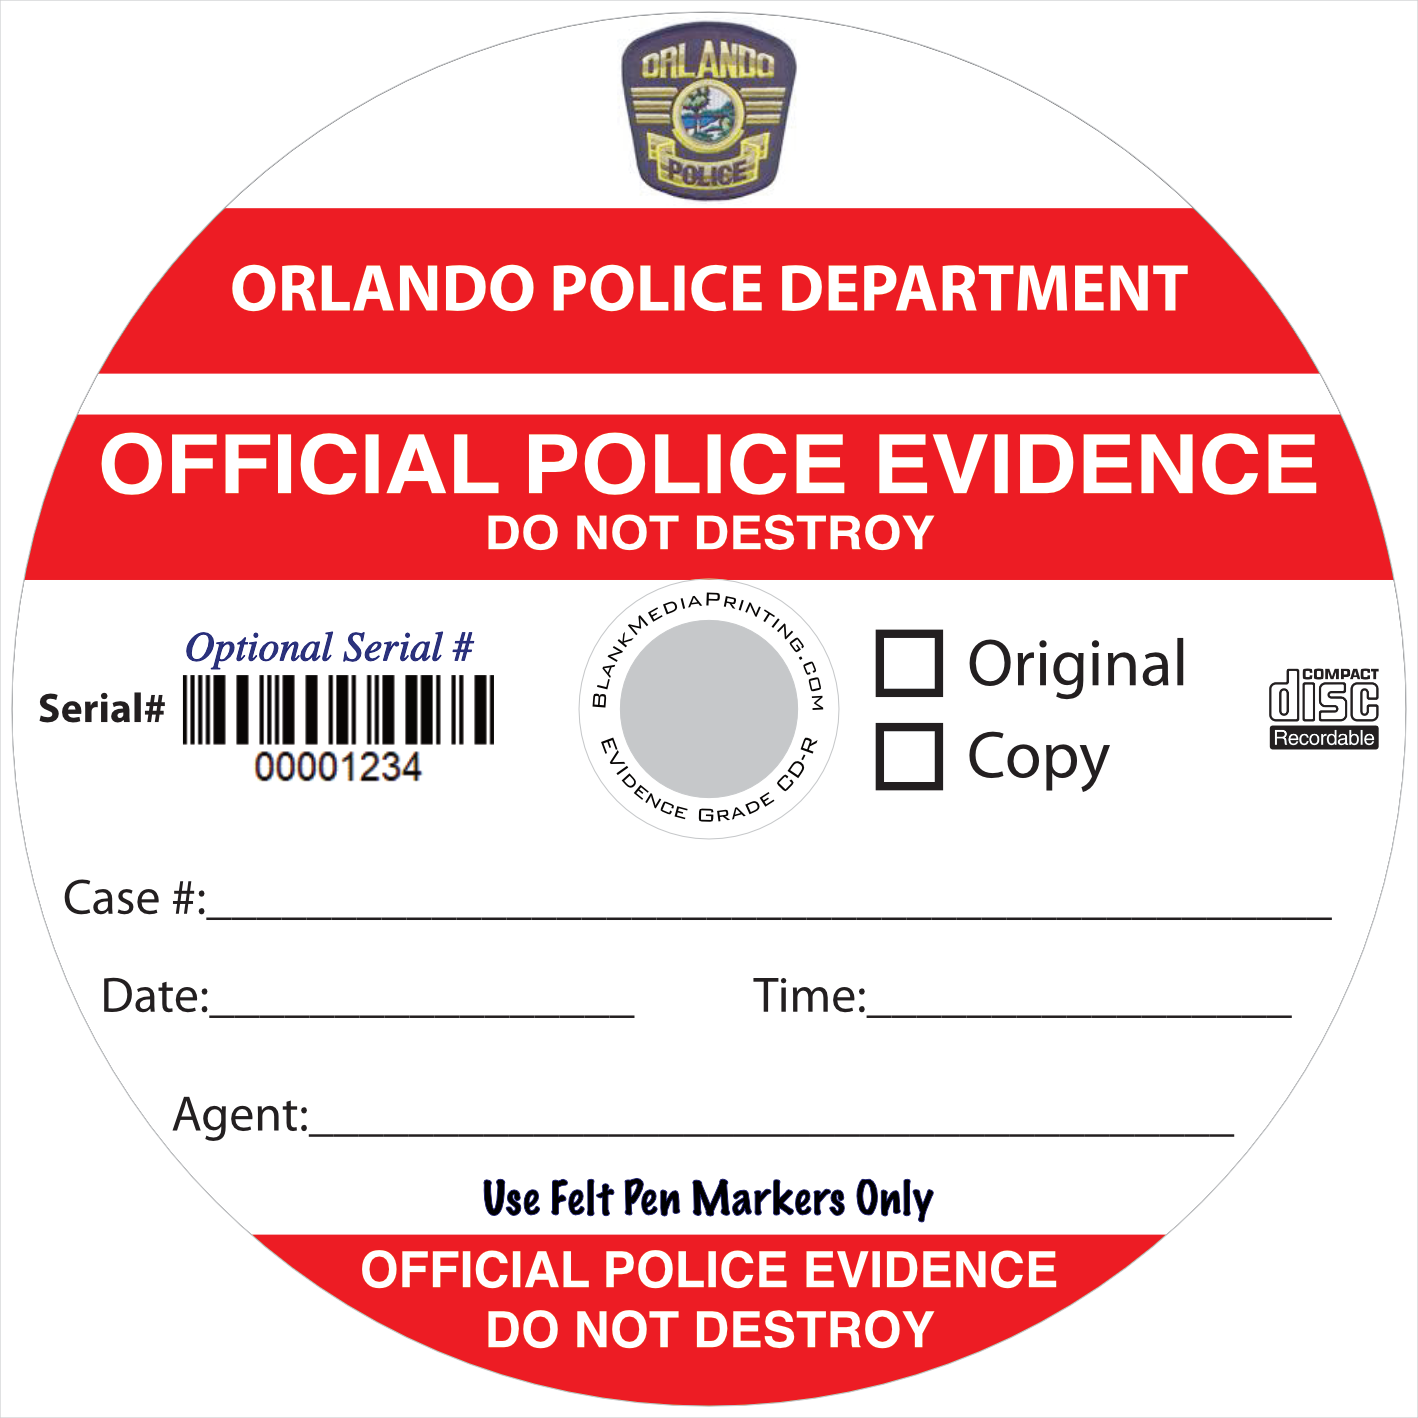 Evidence Grade CD-R™